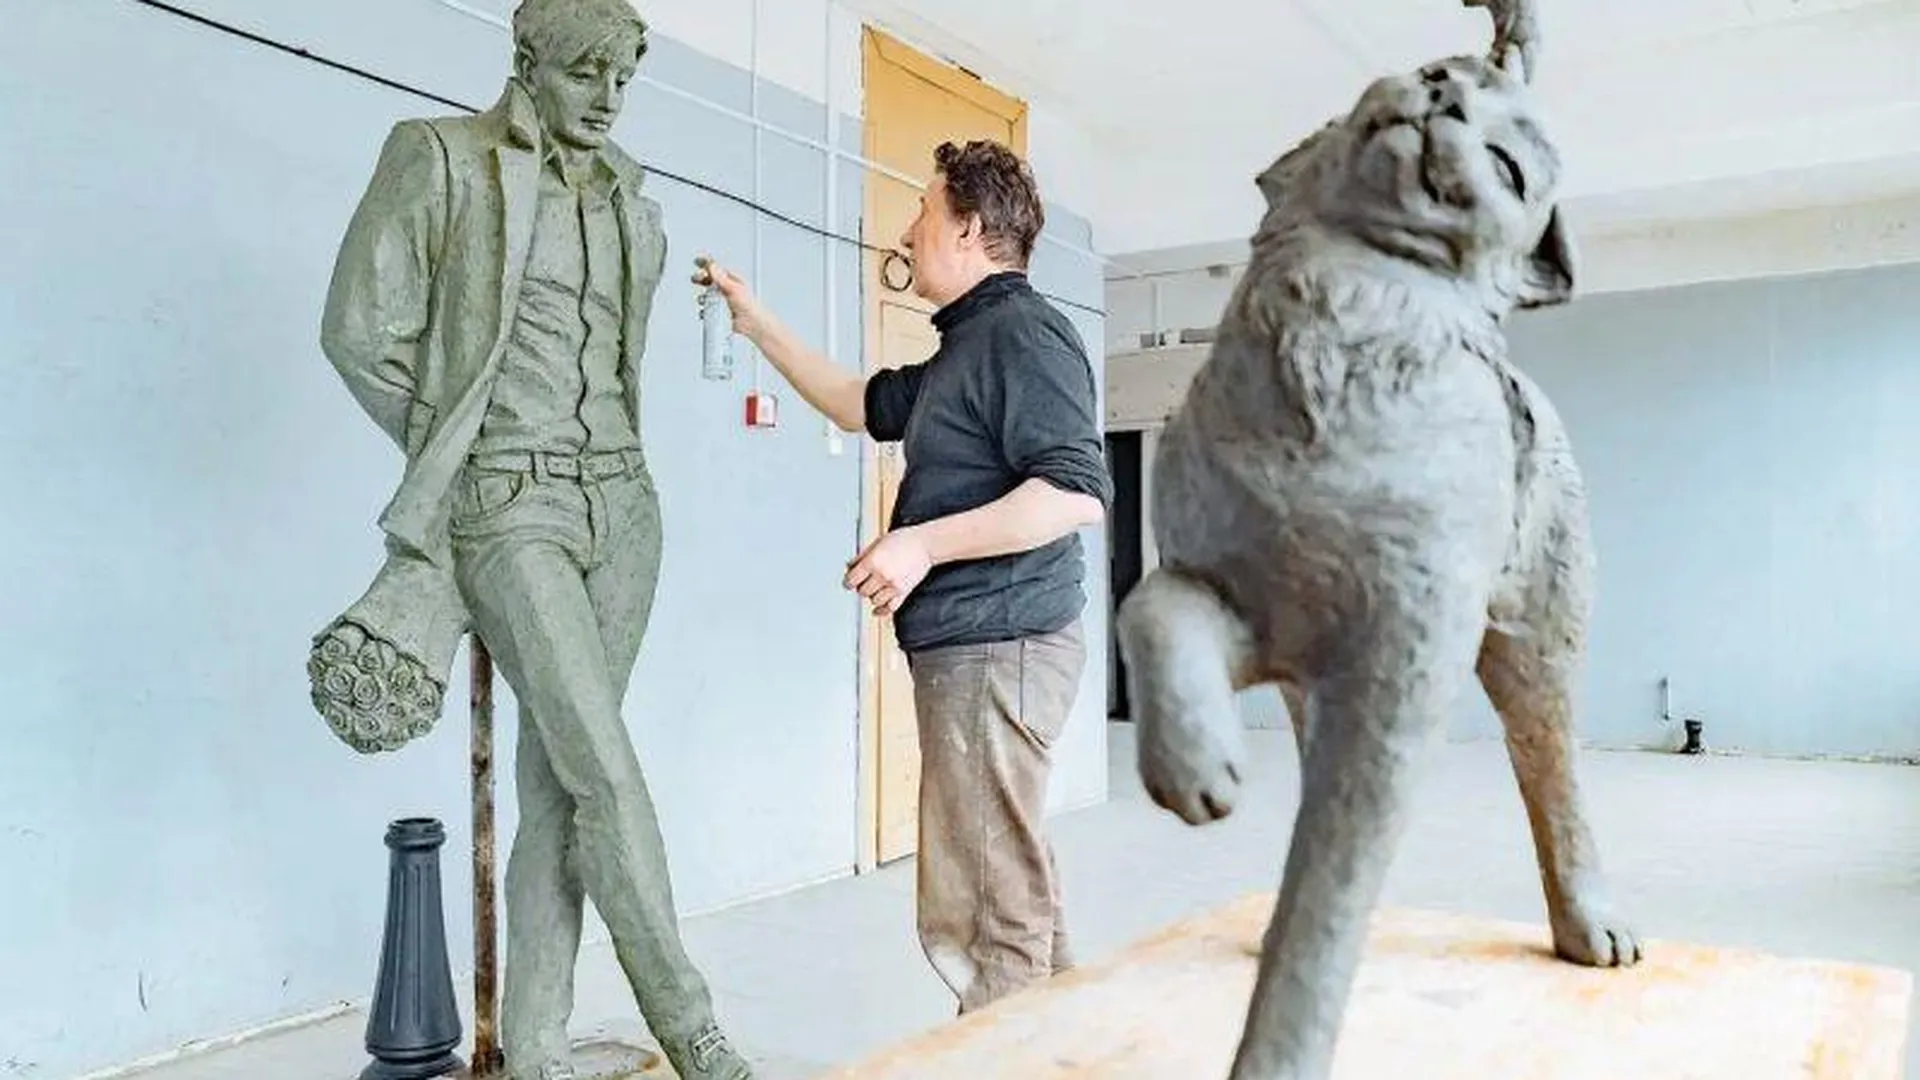 Новая скульптура в честь влюбленных появится в Орехово-Зуево